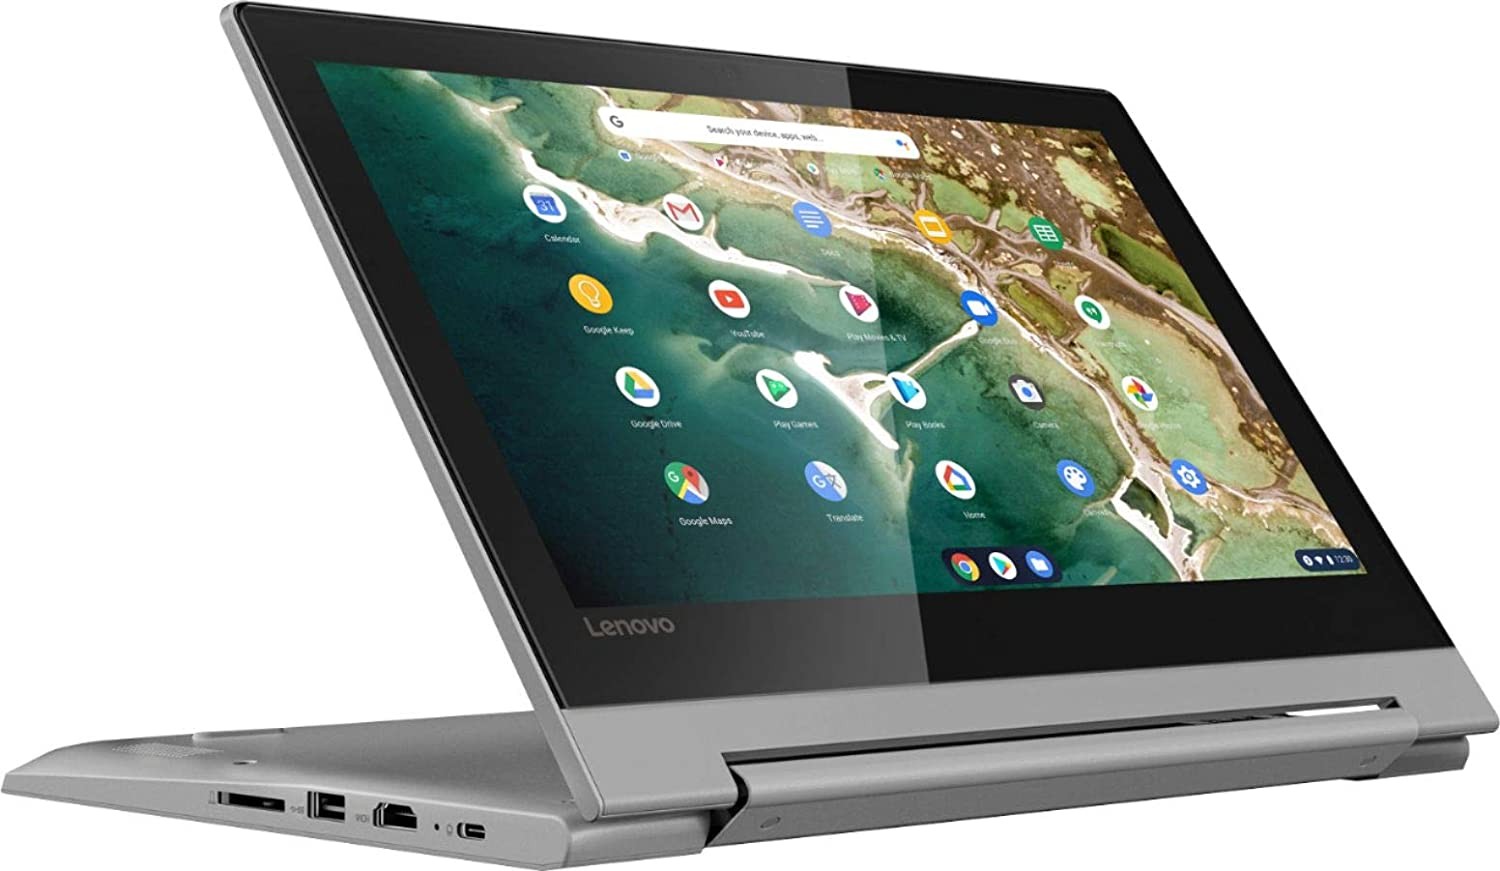 Lenovo Flex 3 Chromebook 11.6" HD Touch MT8173c 4GB 32GB W10H 2in1 Laptop U